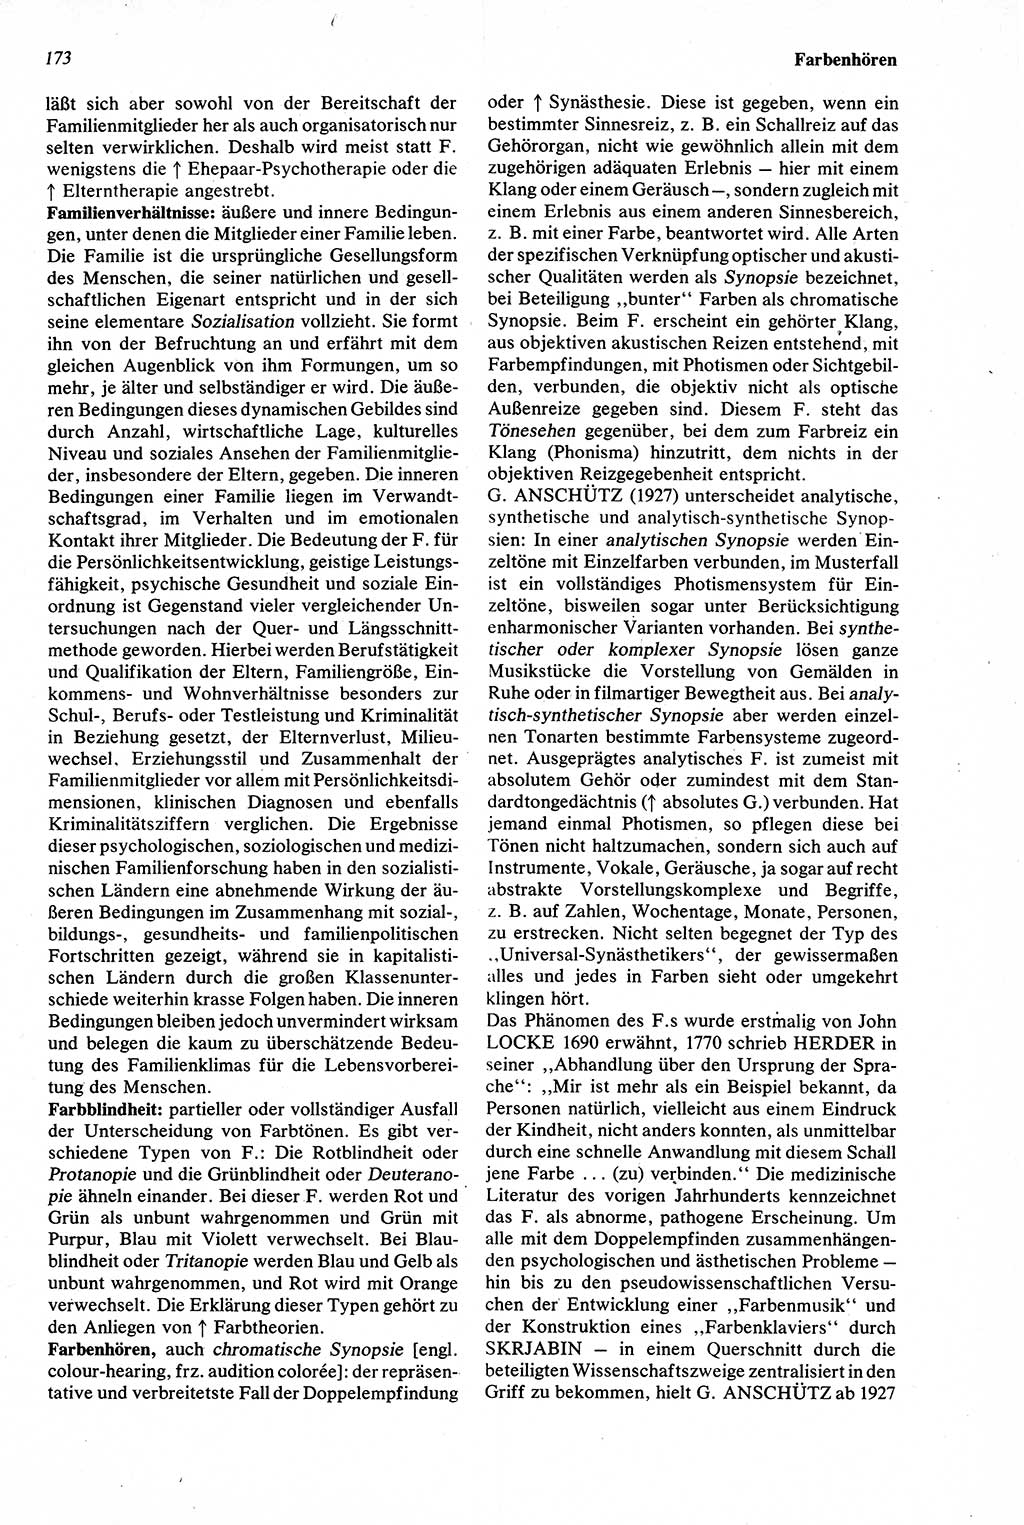 Wörterbuch der Psychologie [Deutsche Demokratische Republik (DDR)] 1976, Seite 173 (Wb. Psych. DDR 1976, S. 173)